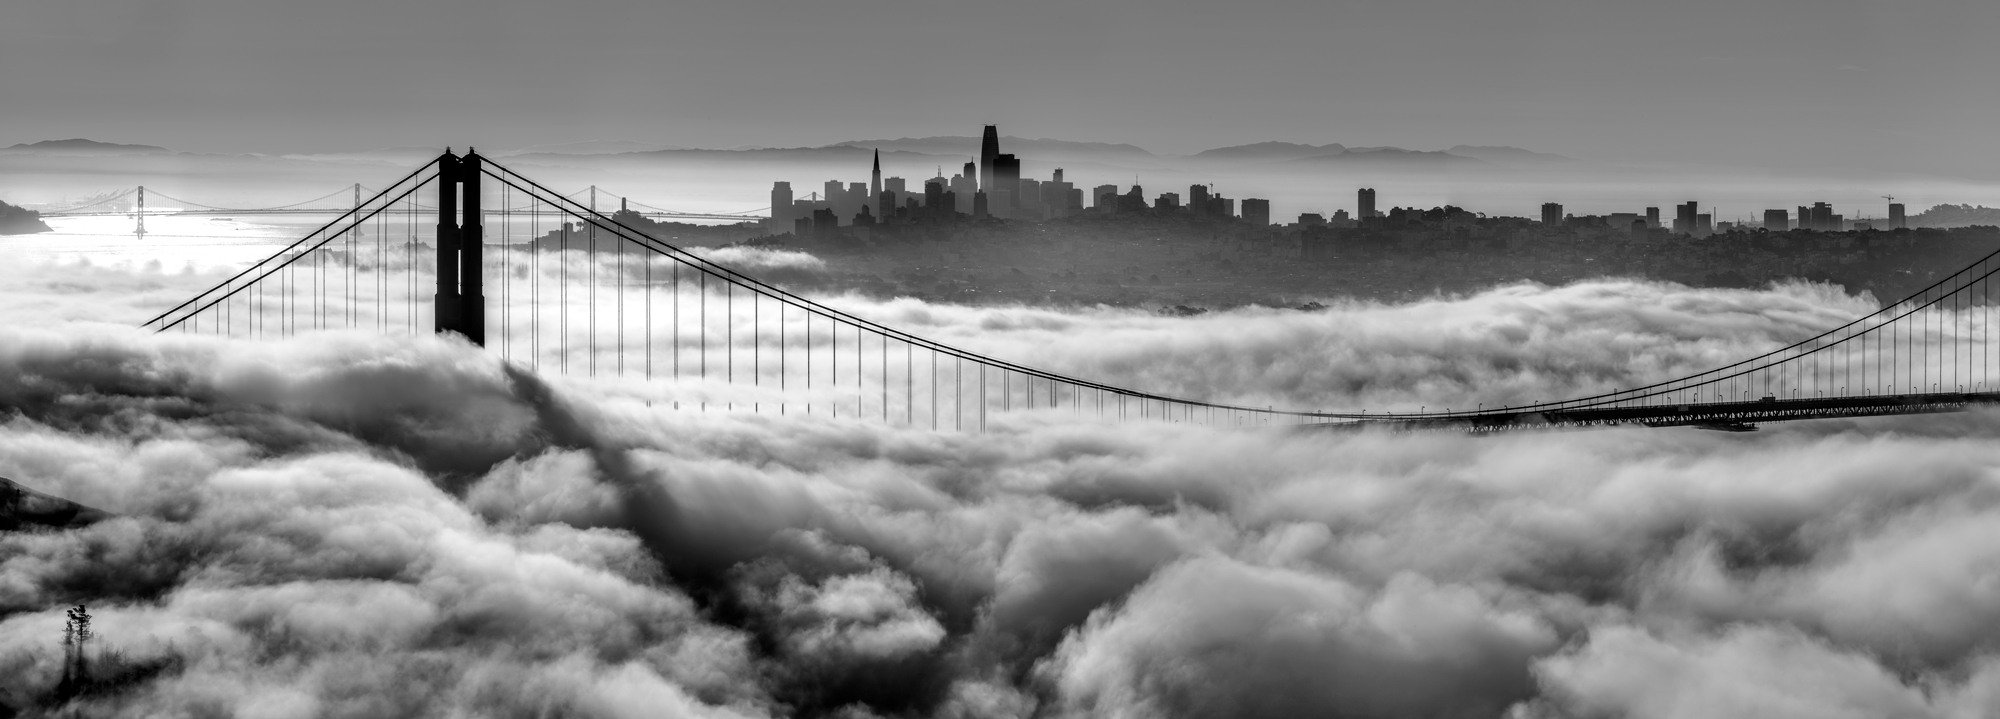 Marin Headlands Golden Gate Bridge San Francisco Bay Area California Fog Sunrise Hawk Hill Panorama Fine Art Landscape Photography Mark Lilly Panorama